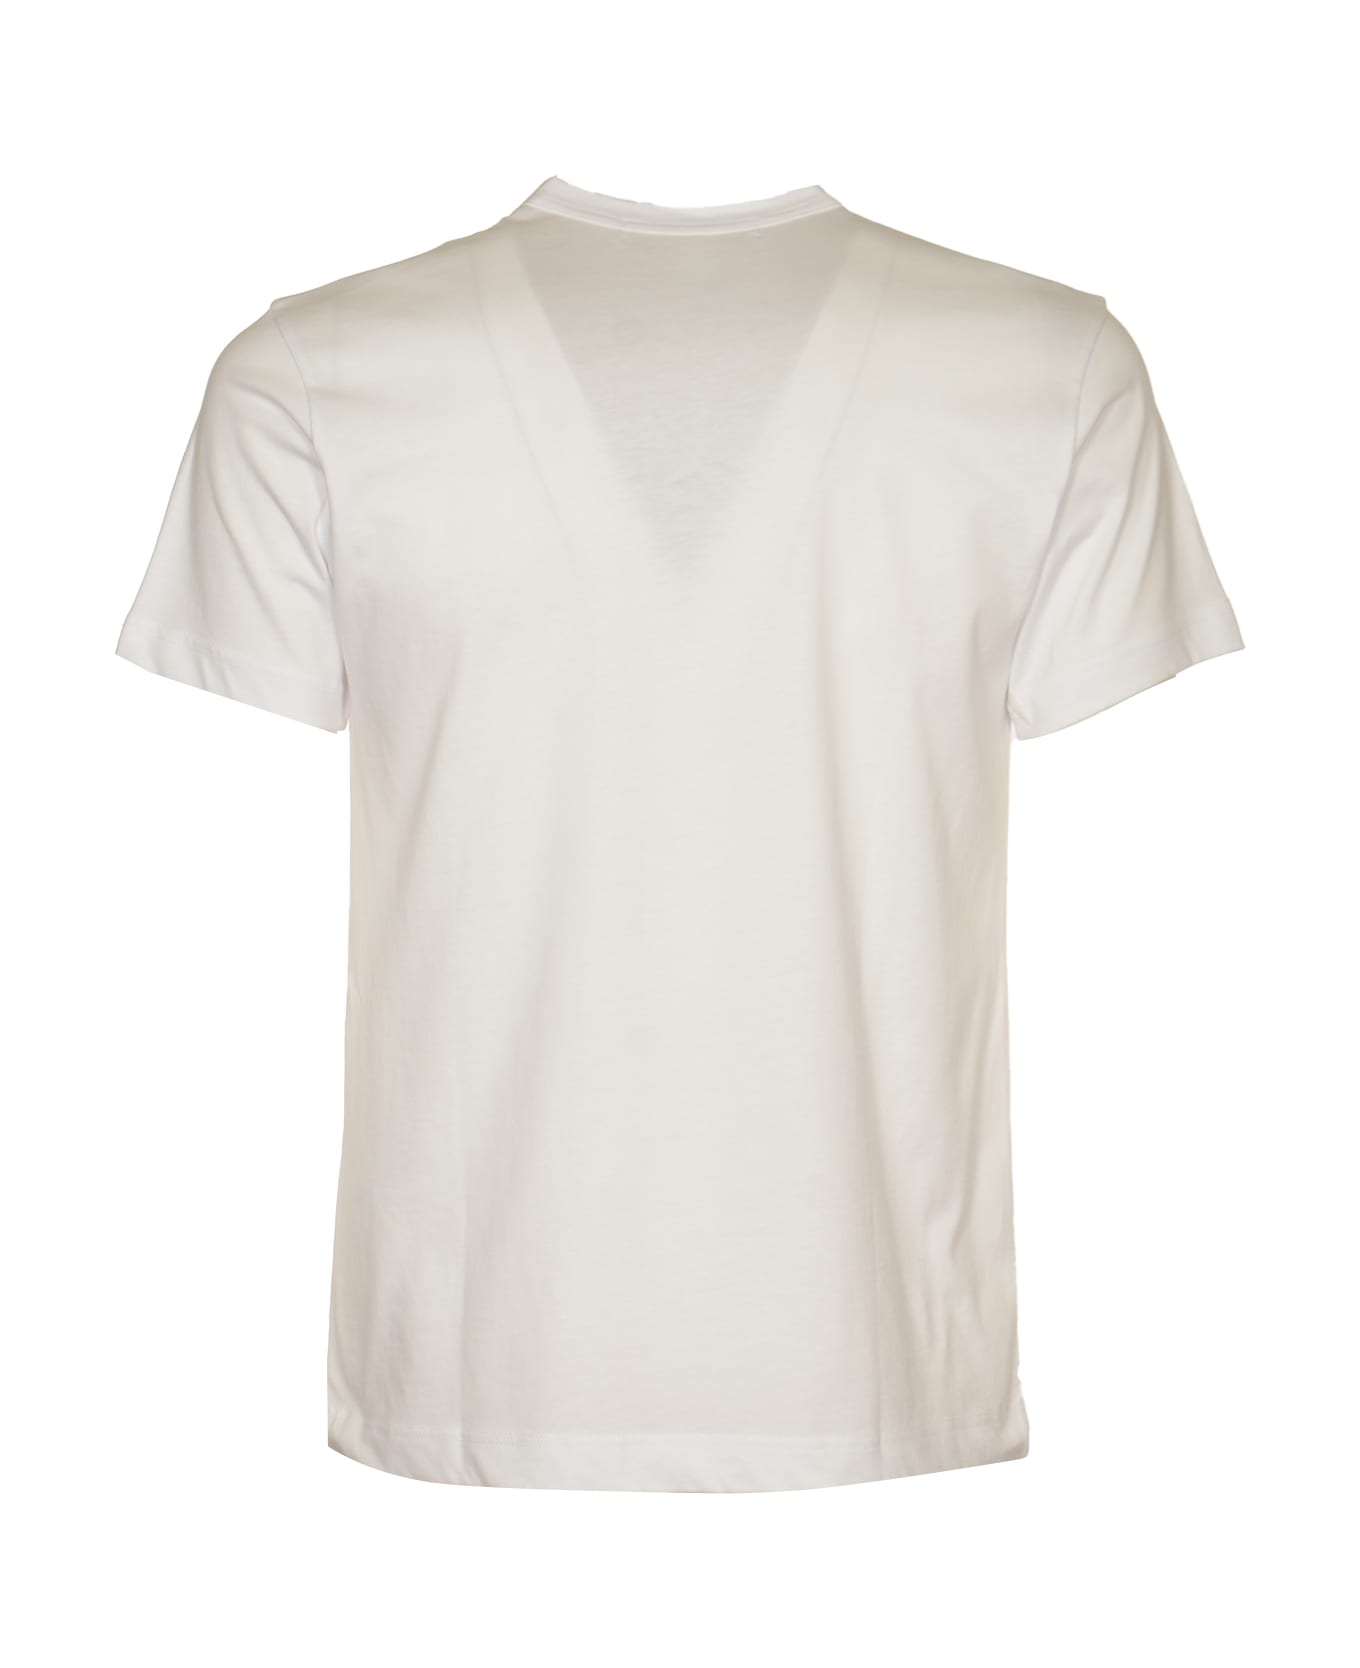 Comme des Garçons Graphic Photo Print T-shirt - White シャツ